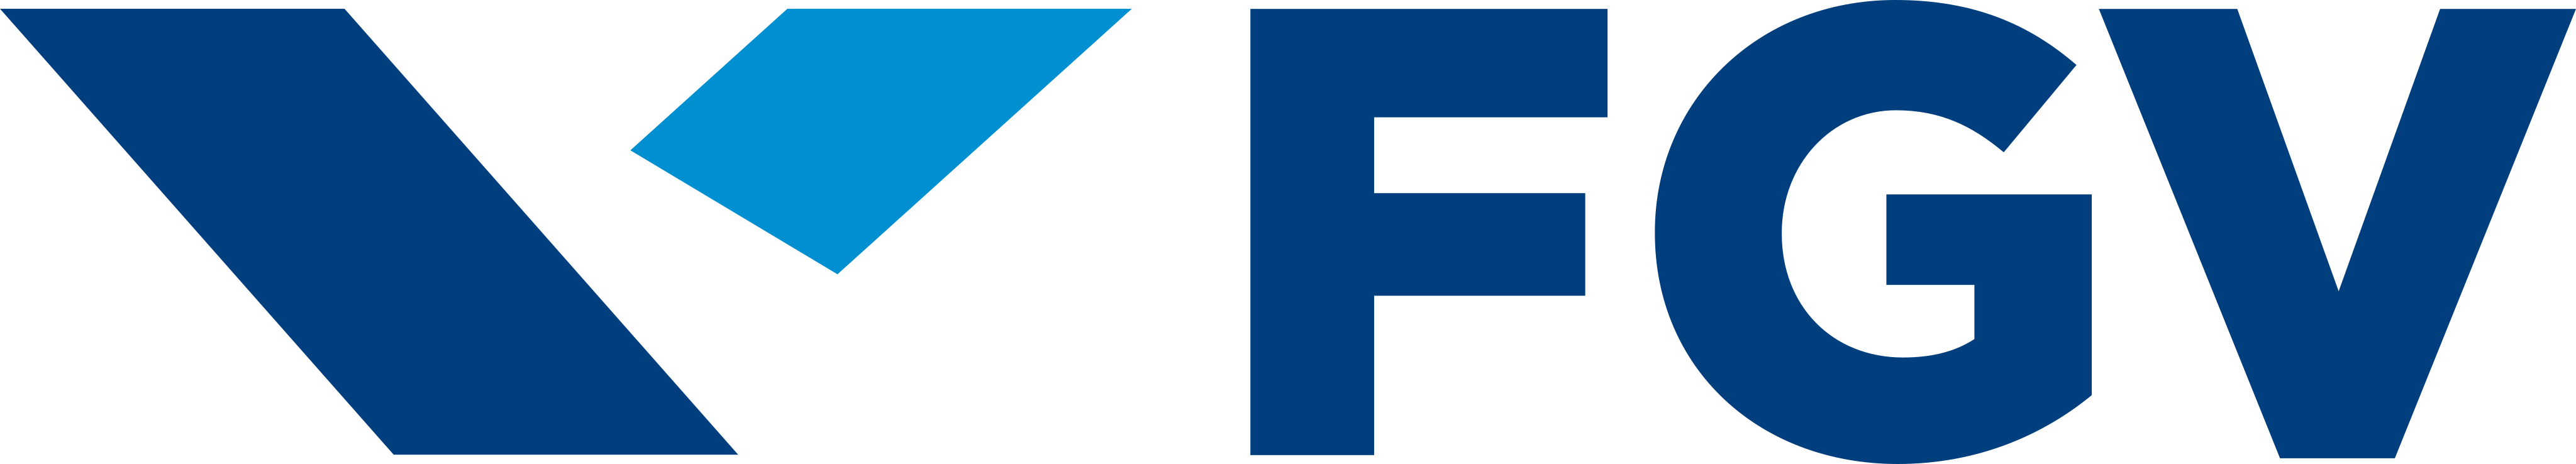 fgv logo 1 - FGV Logo - Fundação Getúlio Vargas Logo